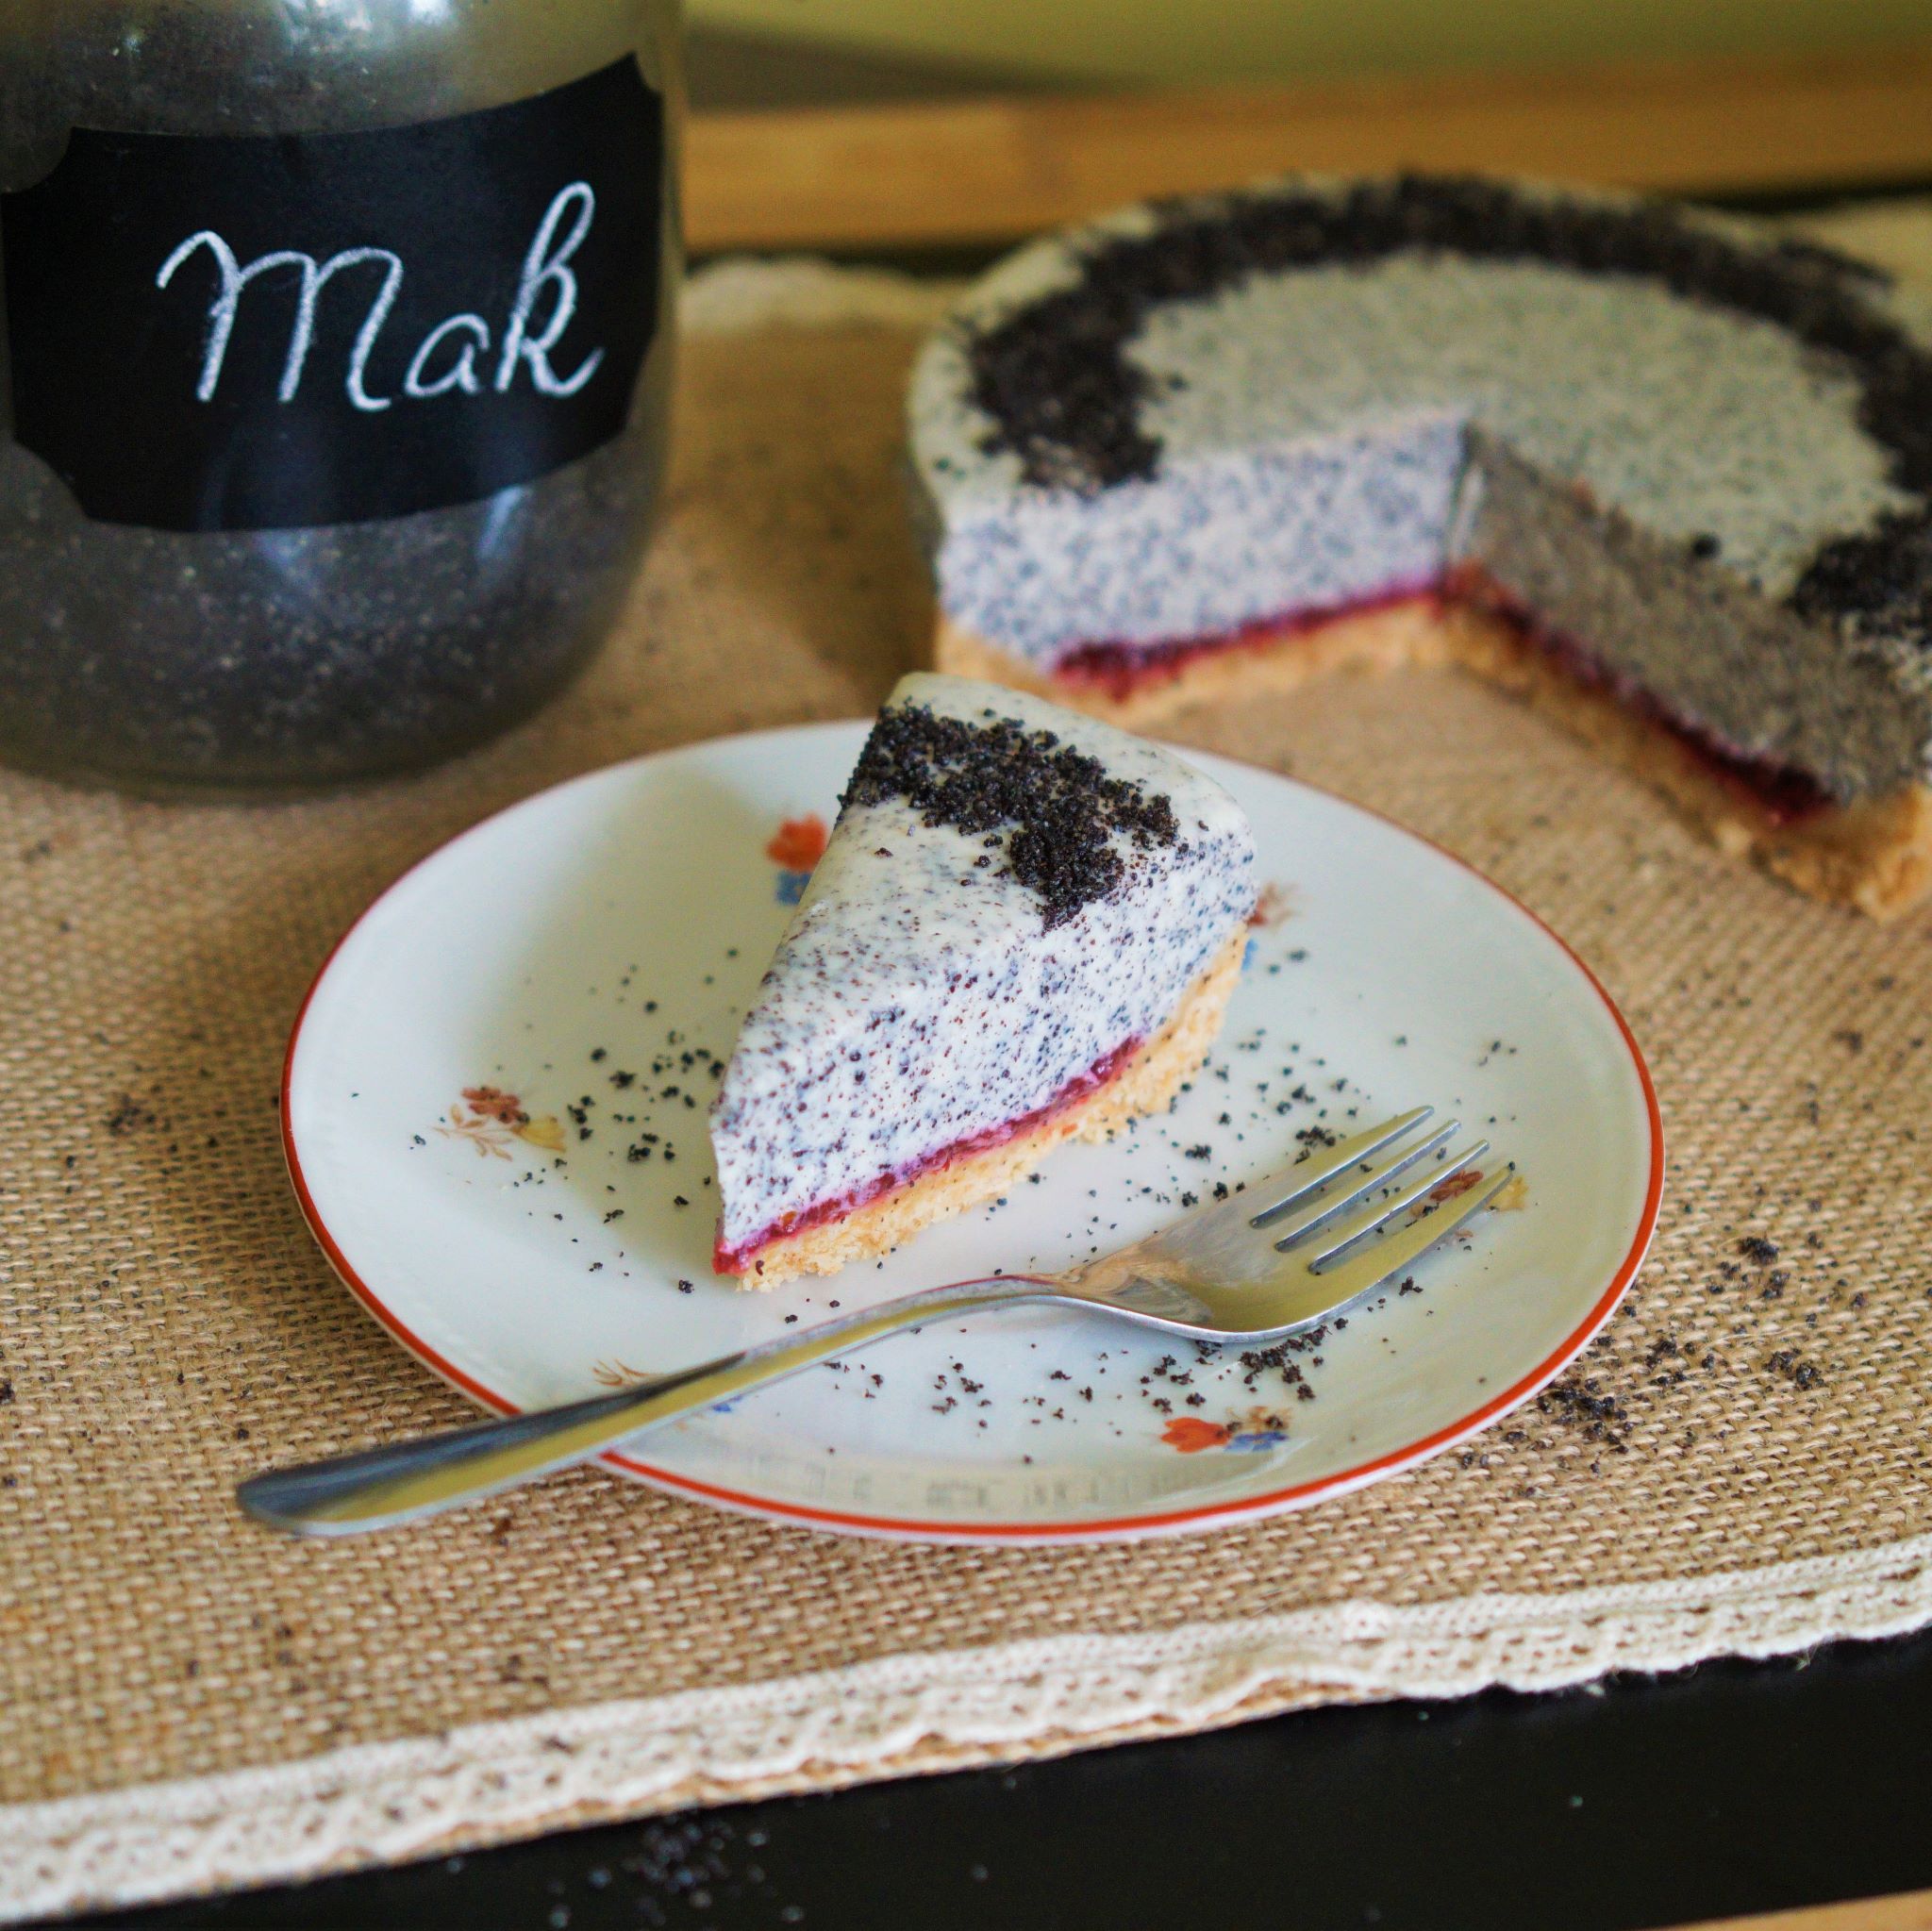 Kúsok makového cheesecake so slivkovou vrstvou na malom bielom tanieriku s červeným okrajom a kvetinkami nerezová dezertná lyžička obsypané mletým makom v pozadí zvyšok cheesecakeu a dúýza s makom na jutovom prestieraní na čiernom povrchu